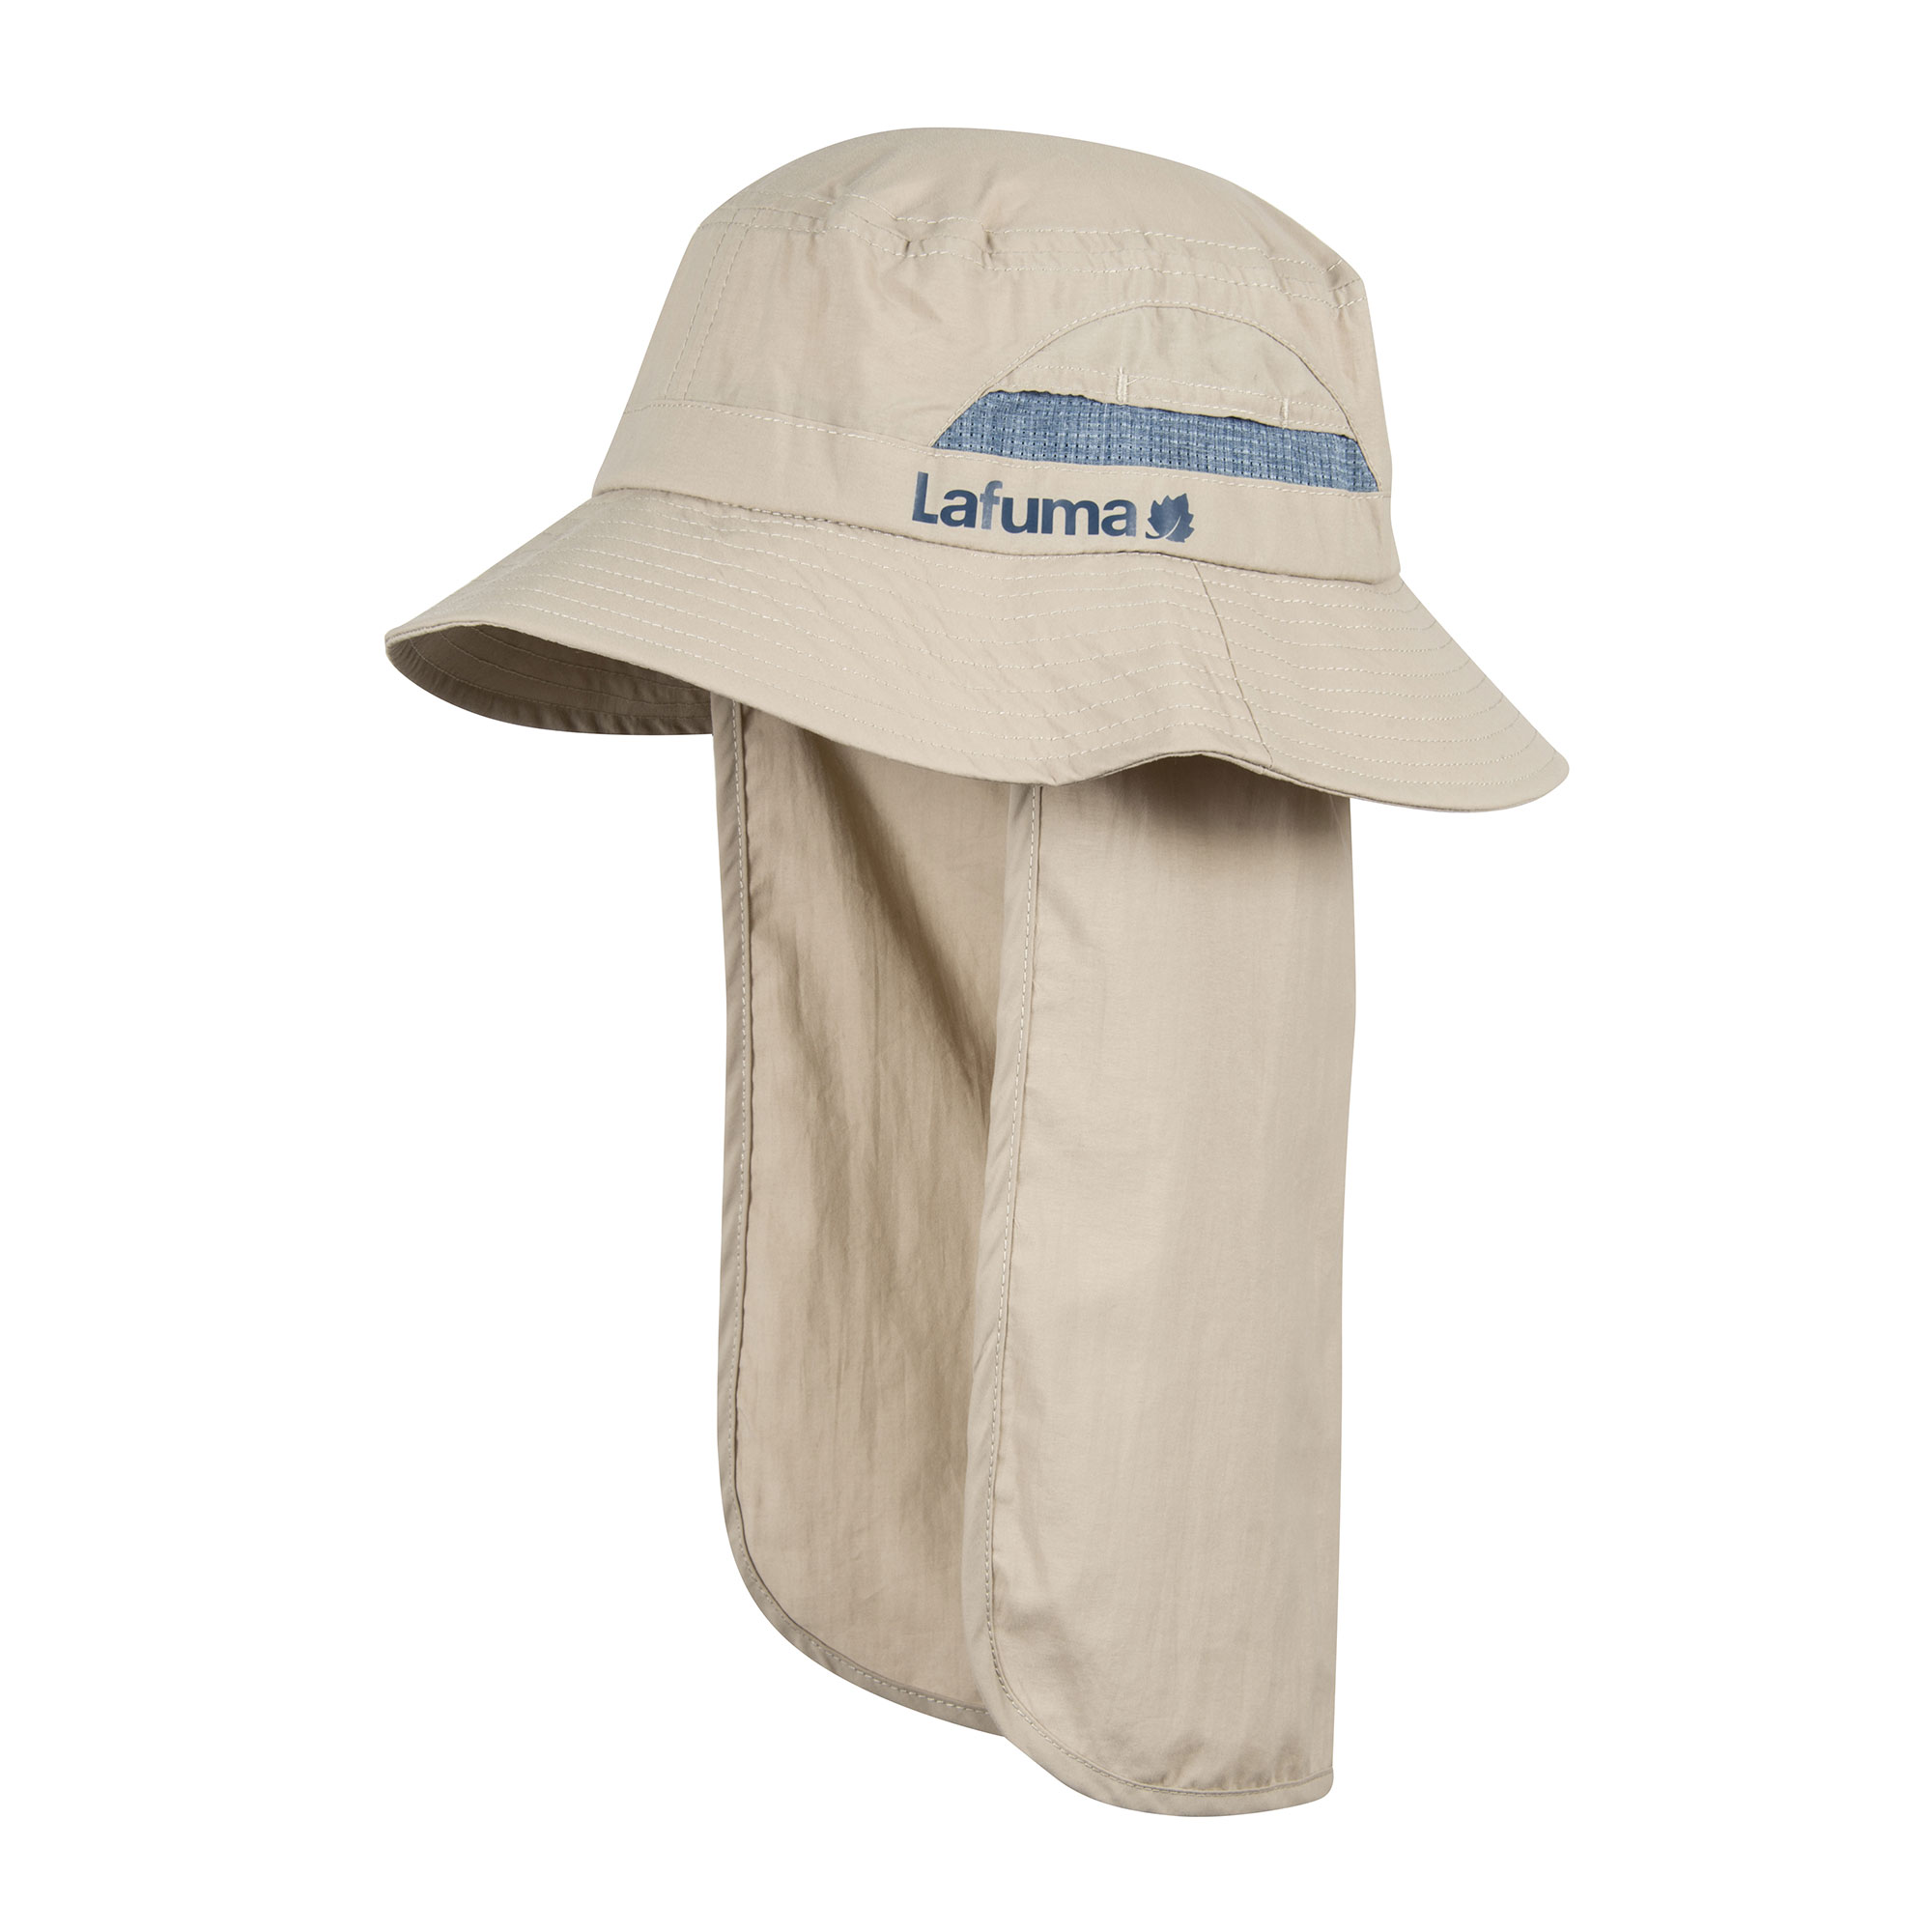 Lafuma Sun Hat - Hat